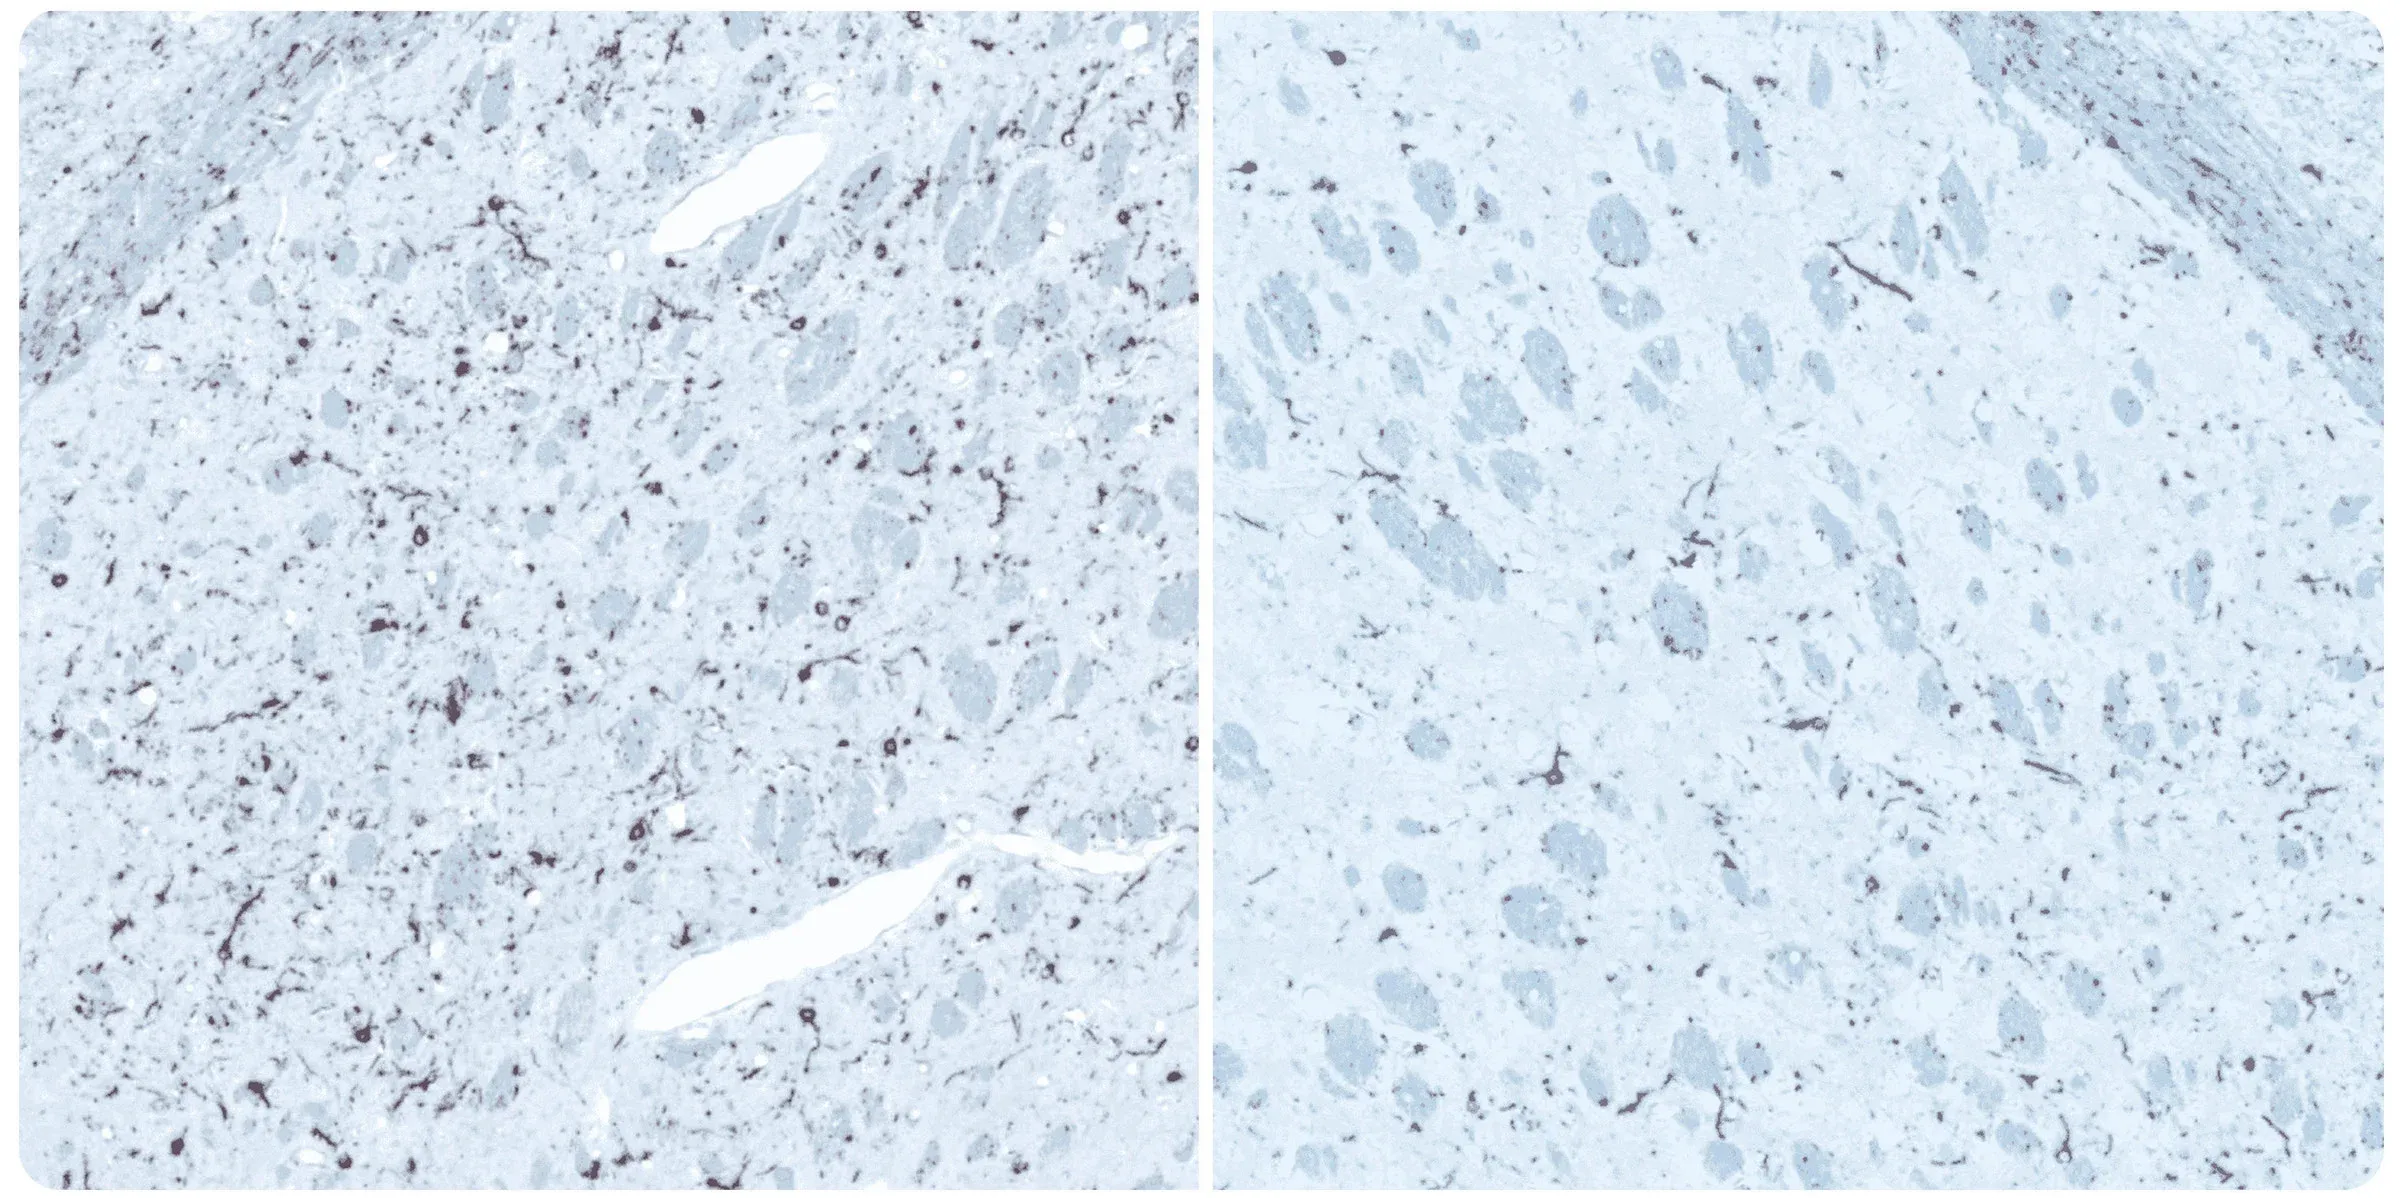 Coloration immunohistochimique (IHC) de coupes de tissus cérébraux pour révéler la charge en alpha synucléine dans le noyau olfactif antérieur (AON), associée à la maladie de Parkinson (PD)